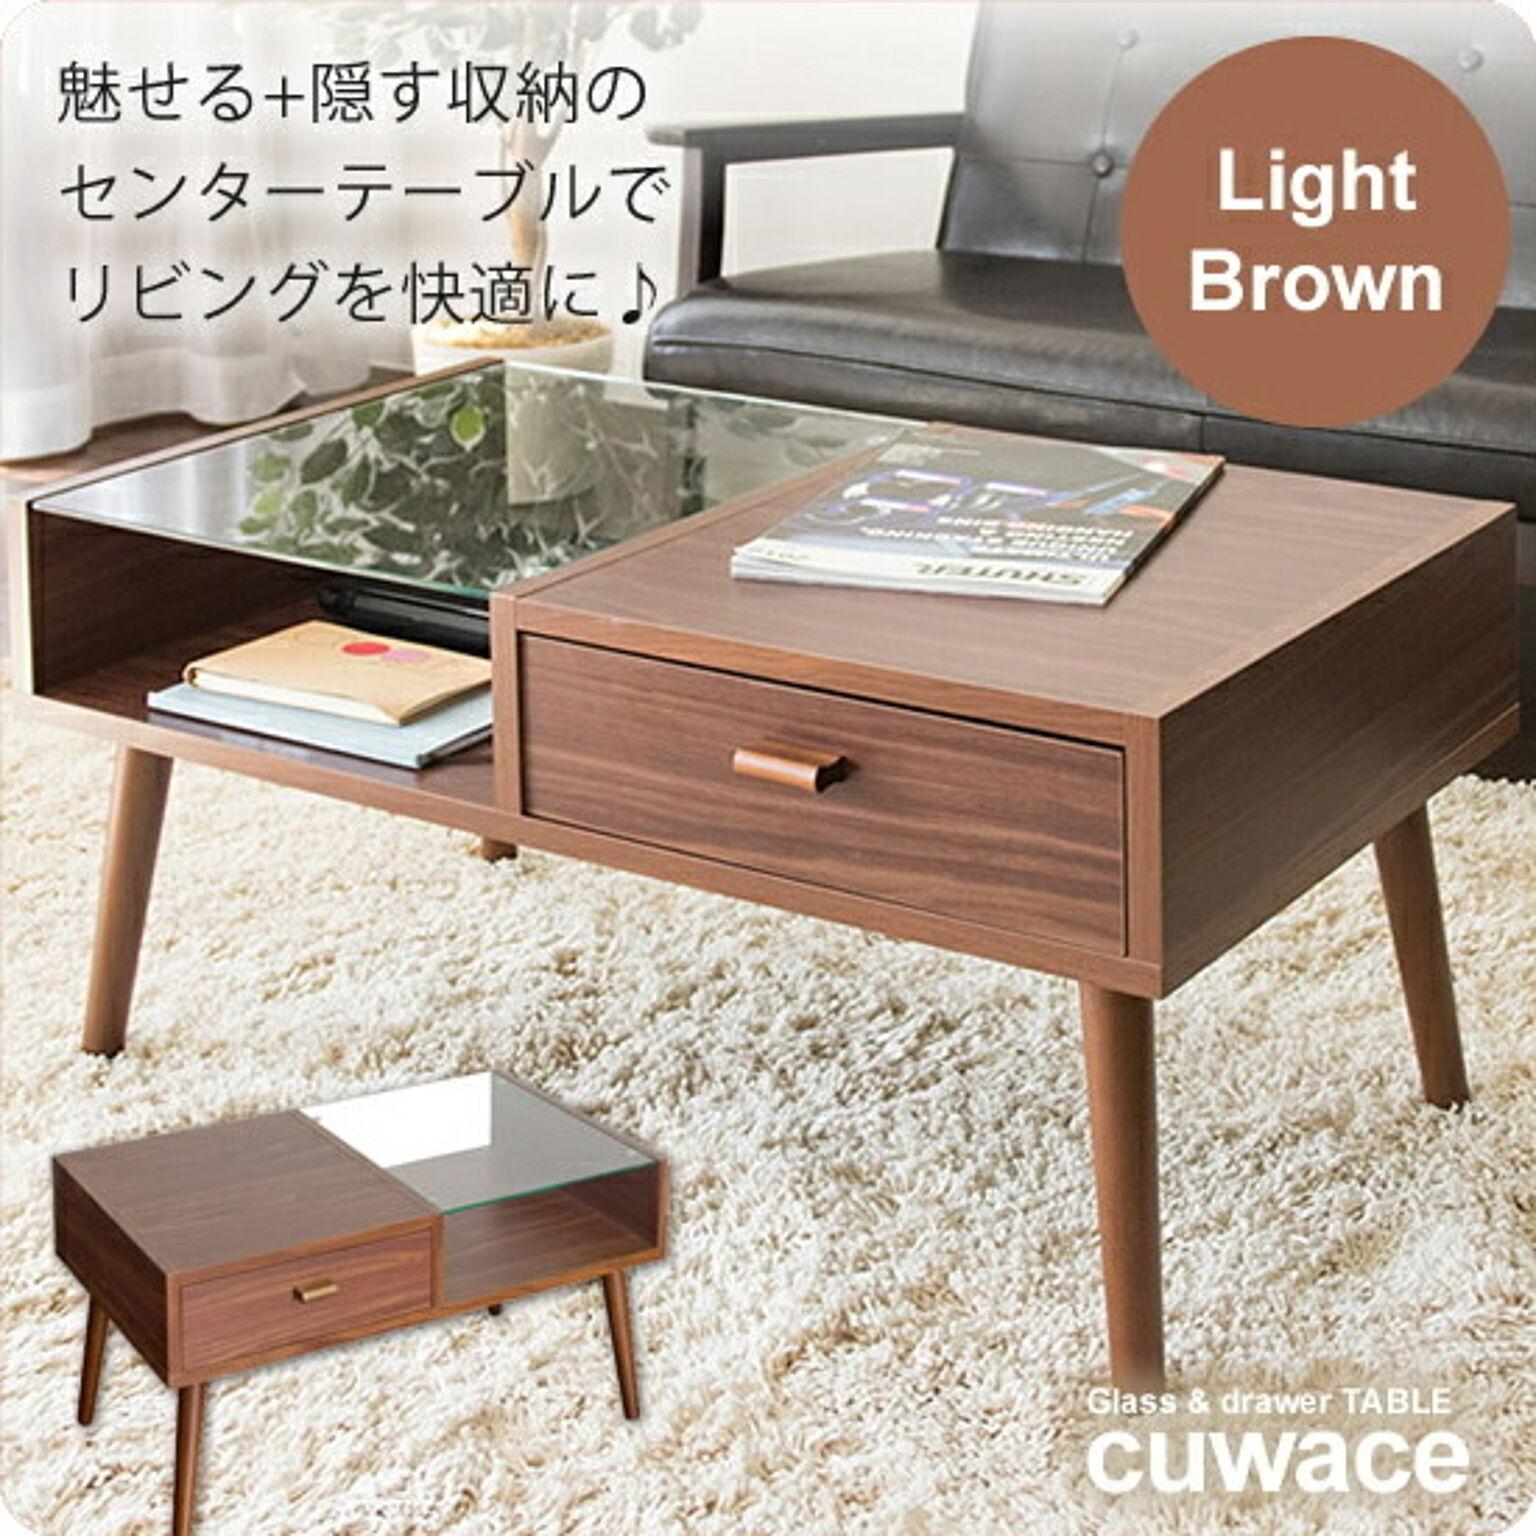 センターテーブル ローテーブル コーヒーテーブル ガラステーブル ： ライトブラウン【cuwace】 ブラウン(brown) (アーバン) リビングテーブル 